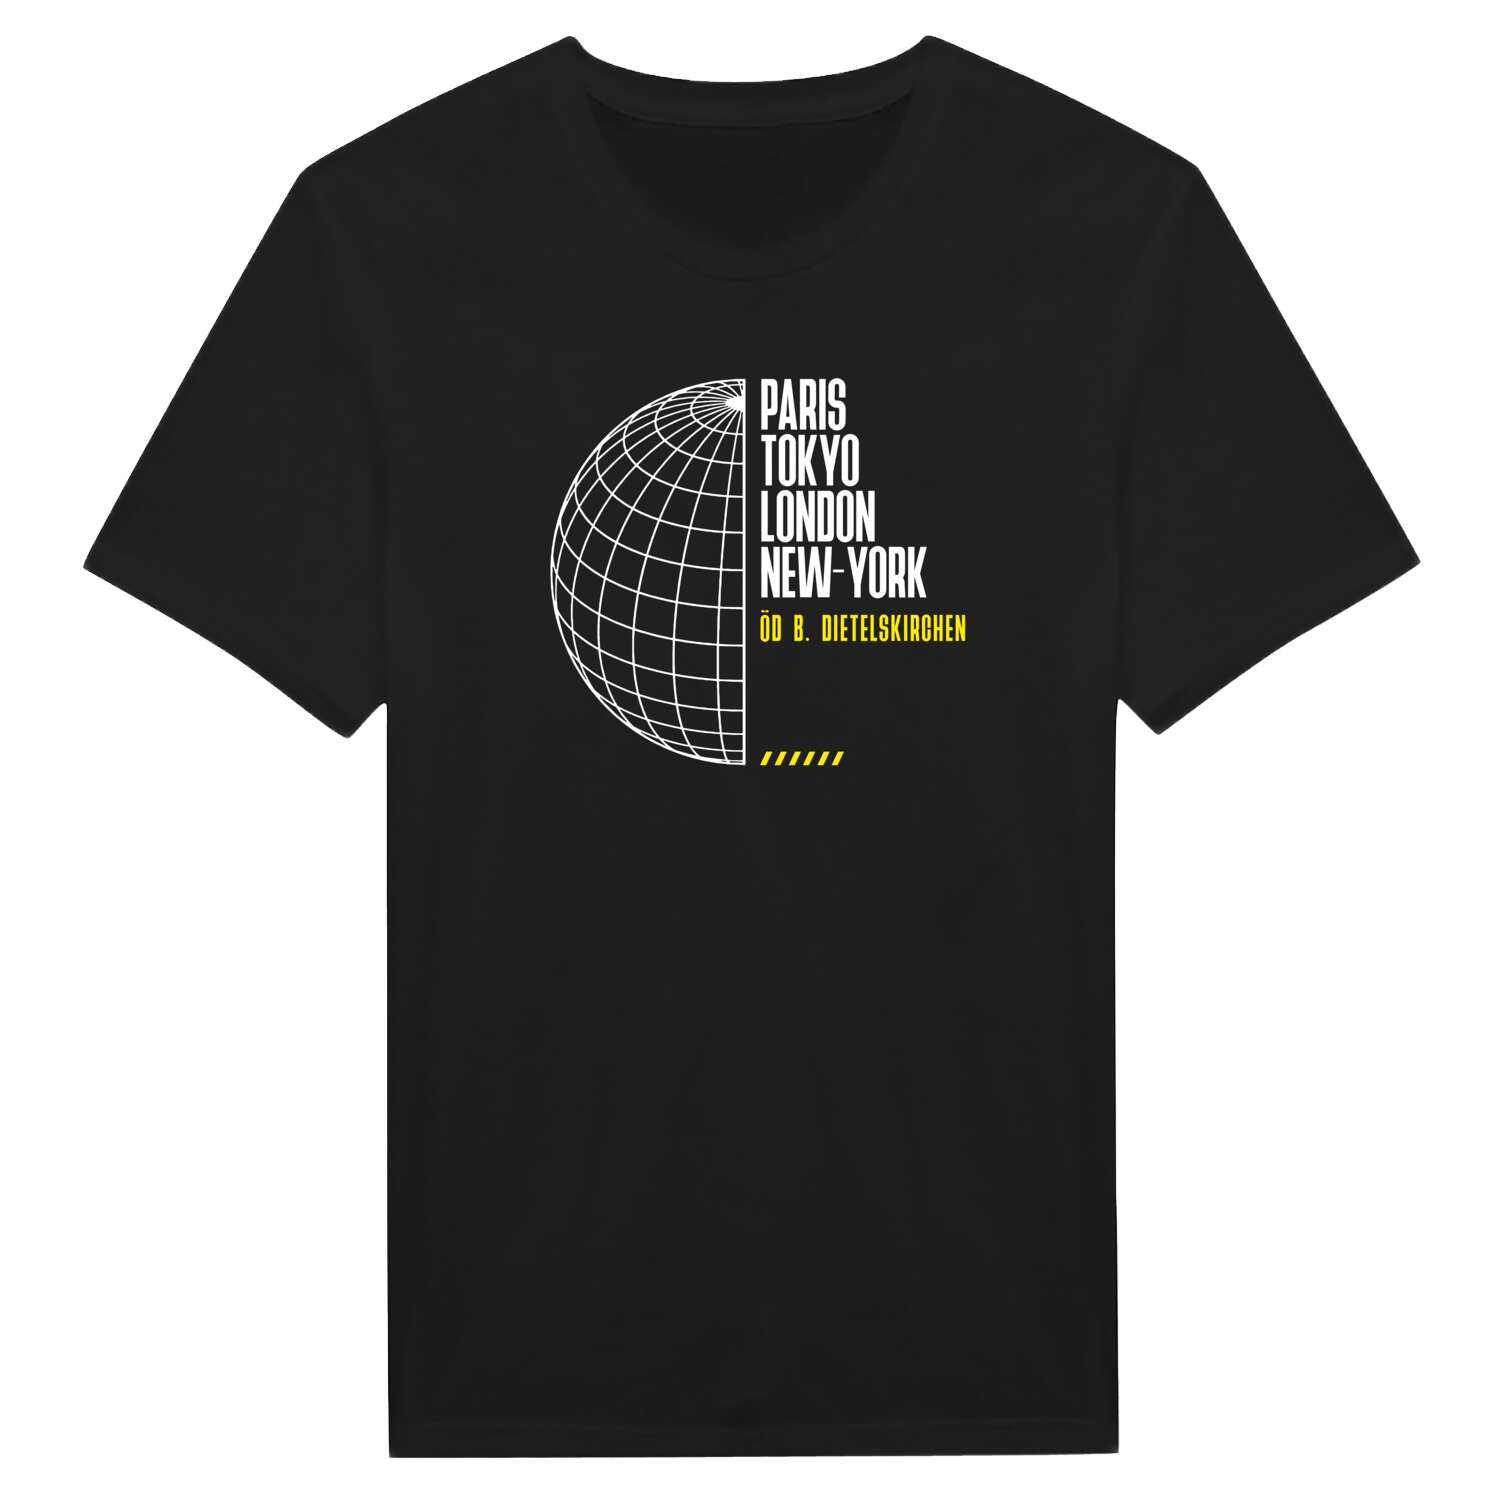 Öd b. Dietelskirchen T-Shirt »Paris Tokyo London«